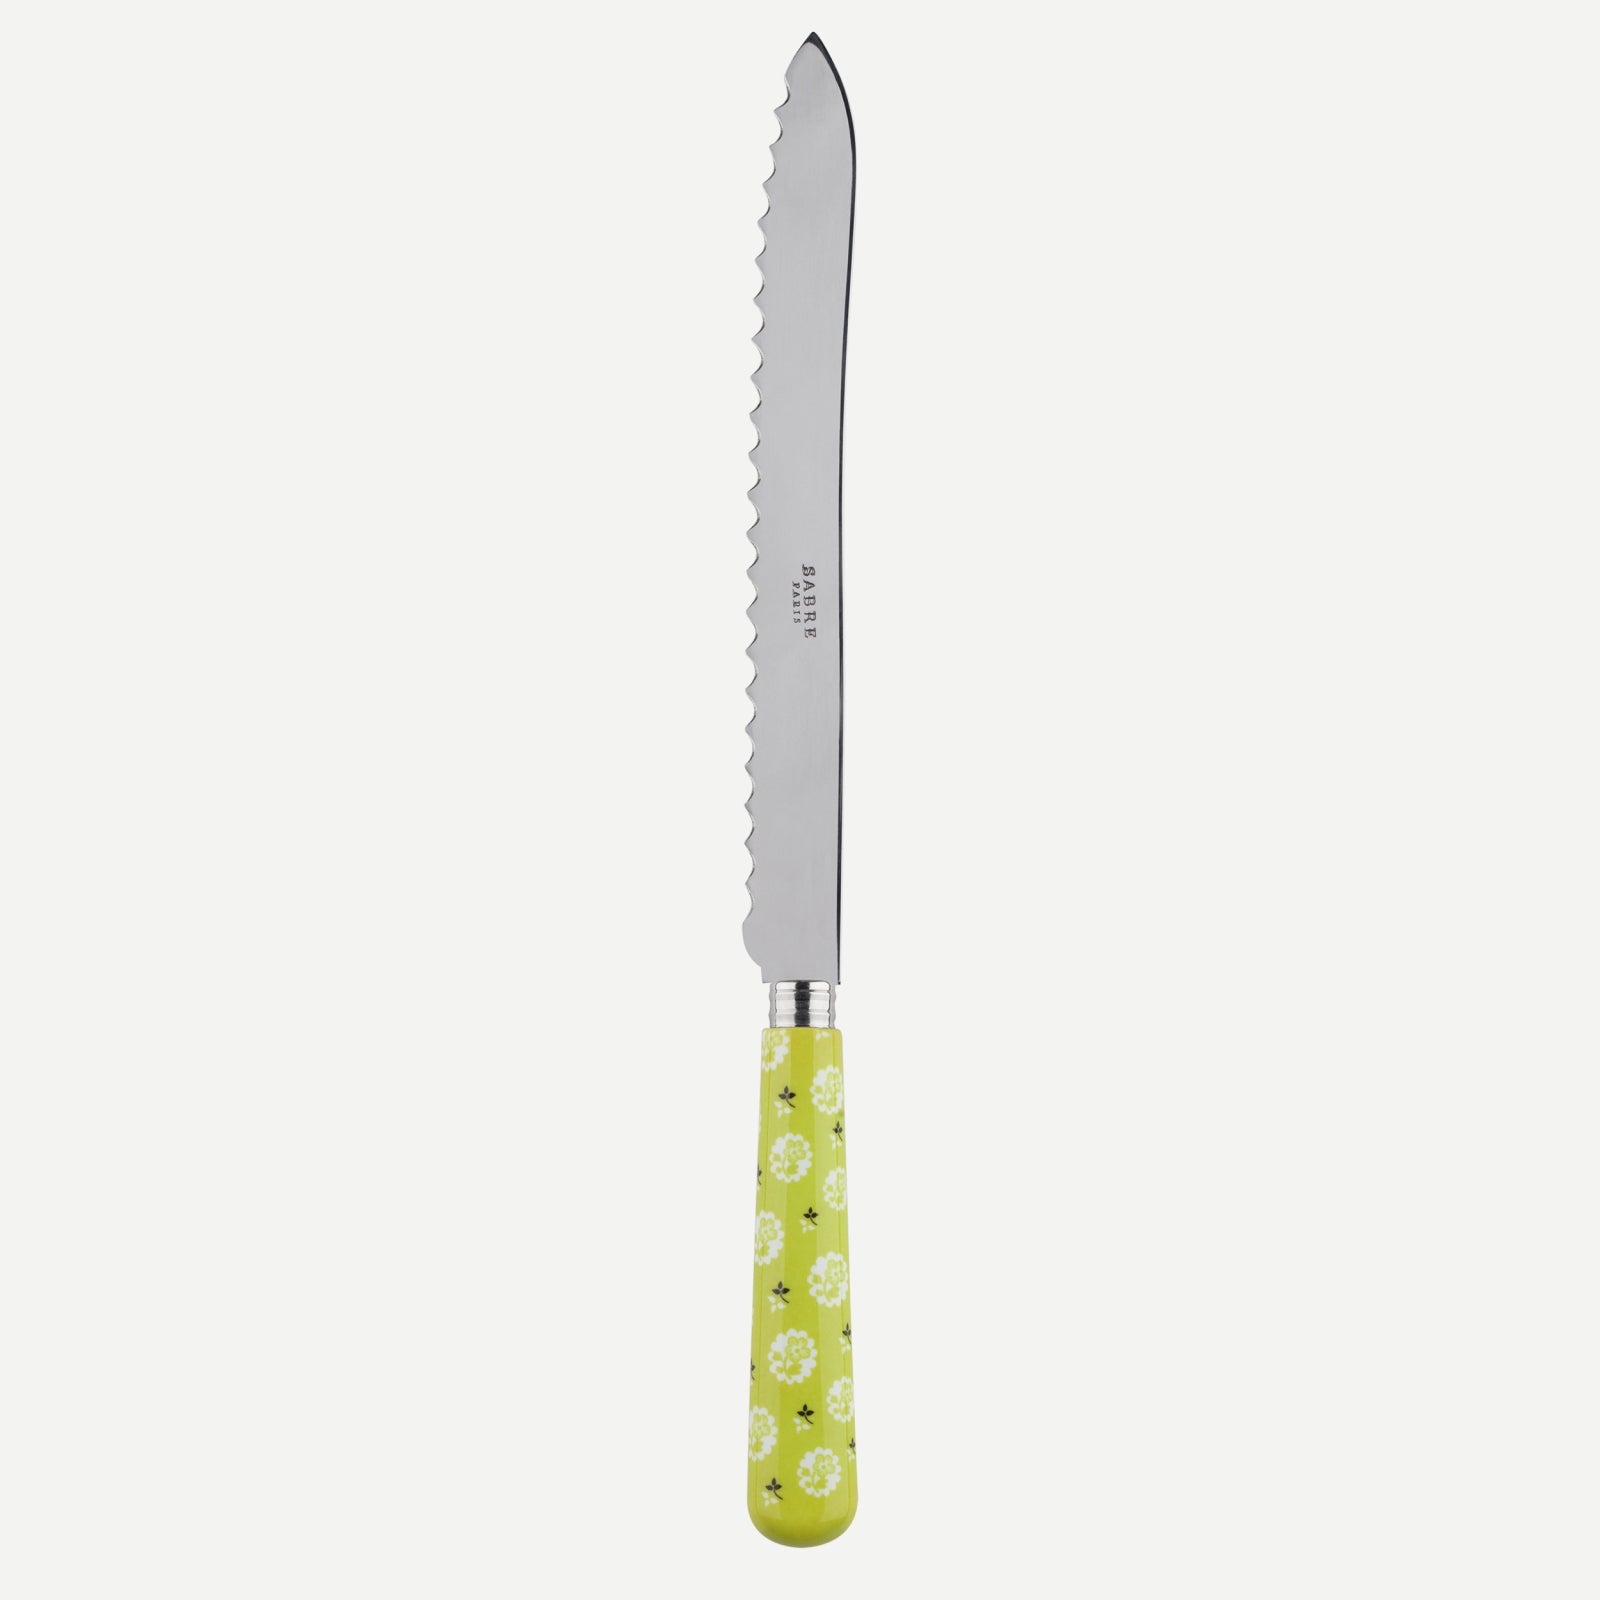 Bread knife - Provencal - Light green